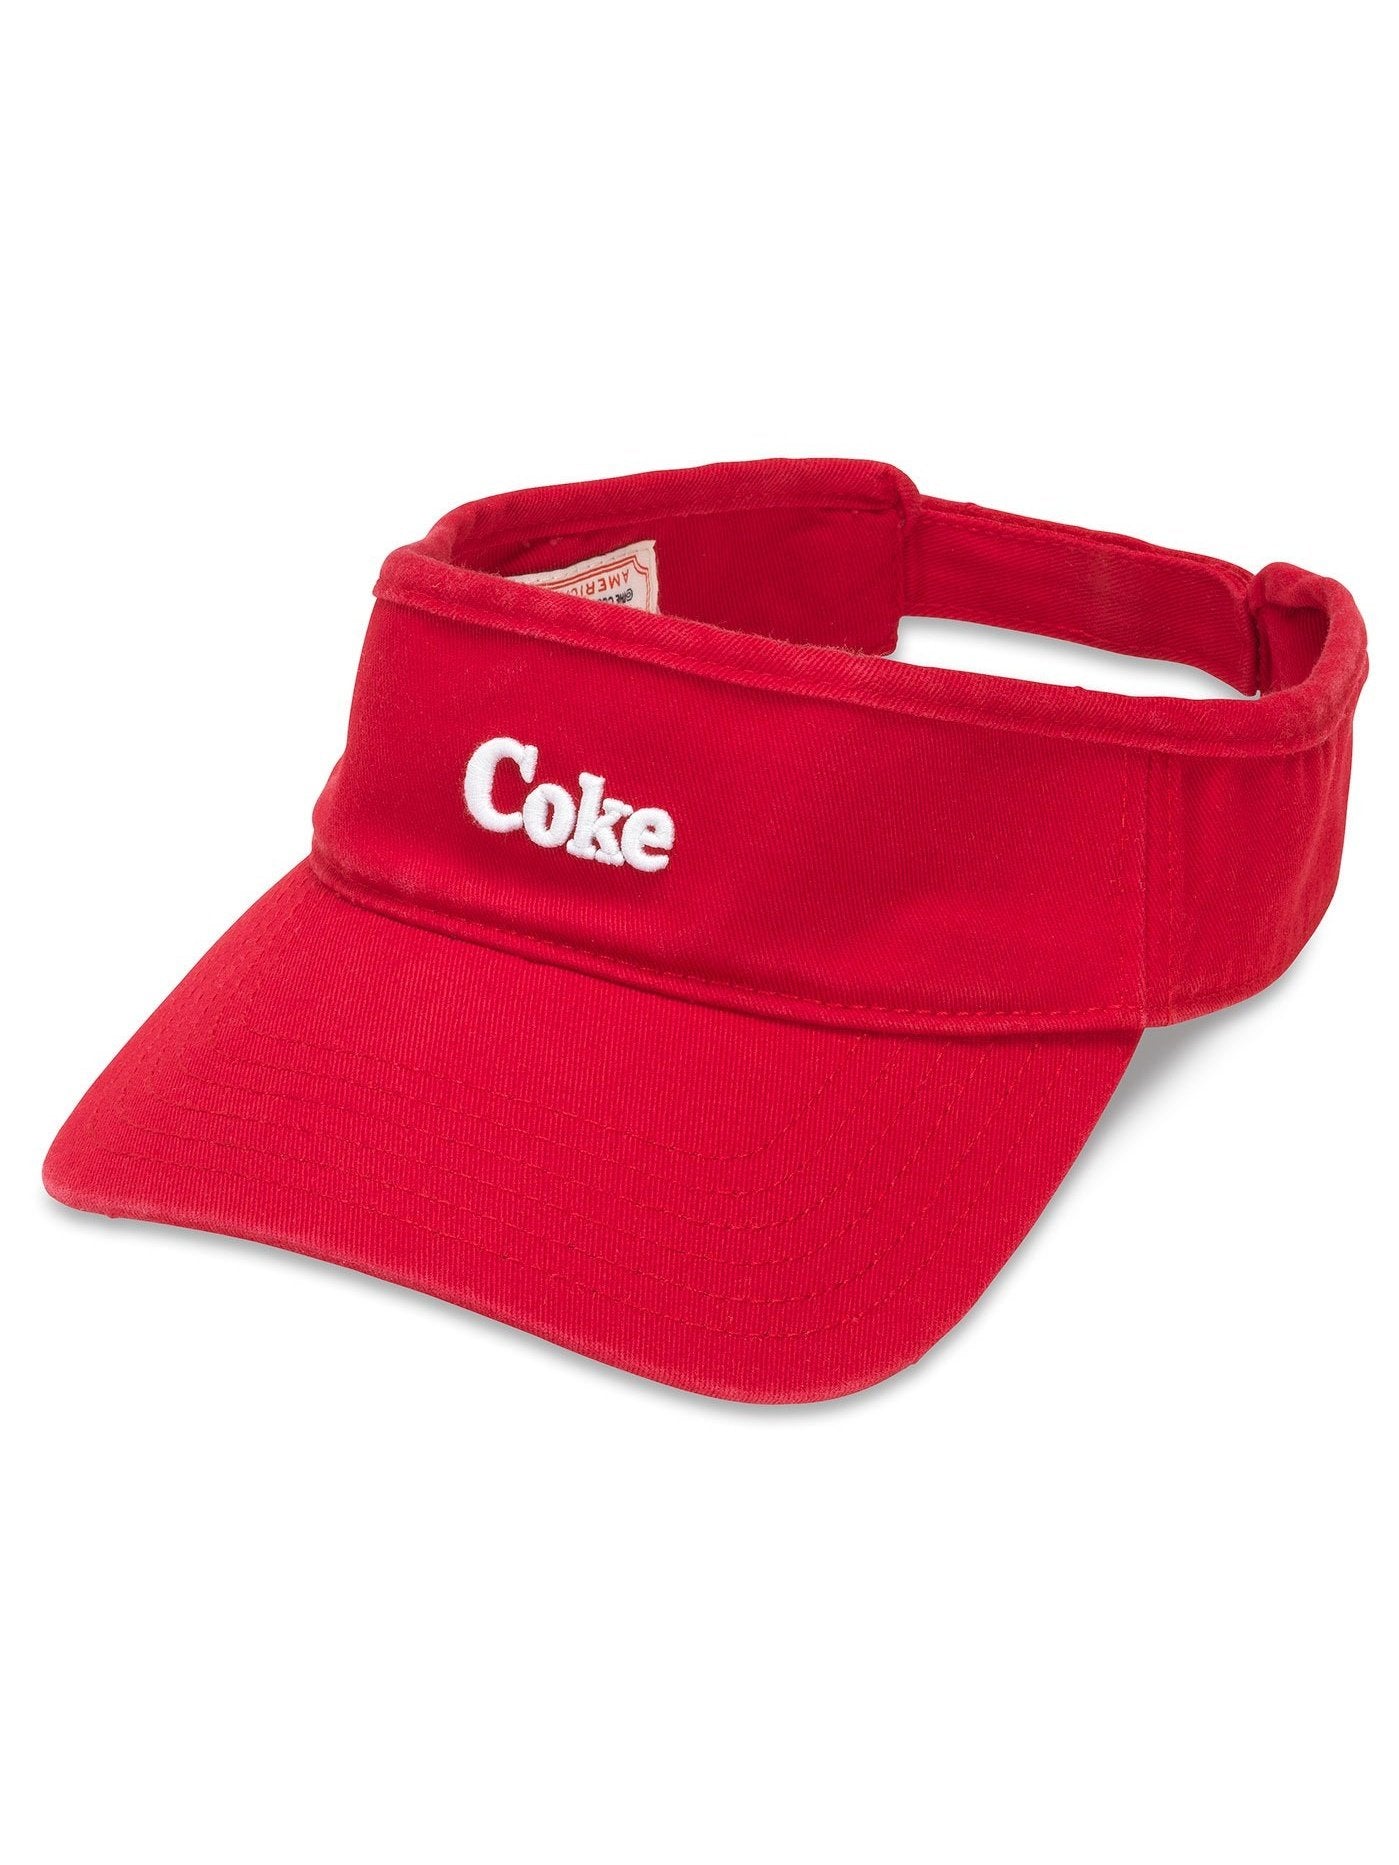 American Needle Coca Cola Micro Visor Hat Red COKE-1805A.